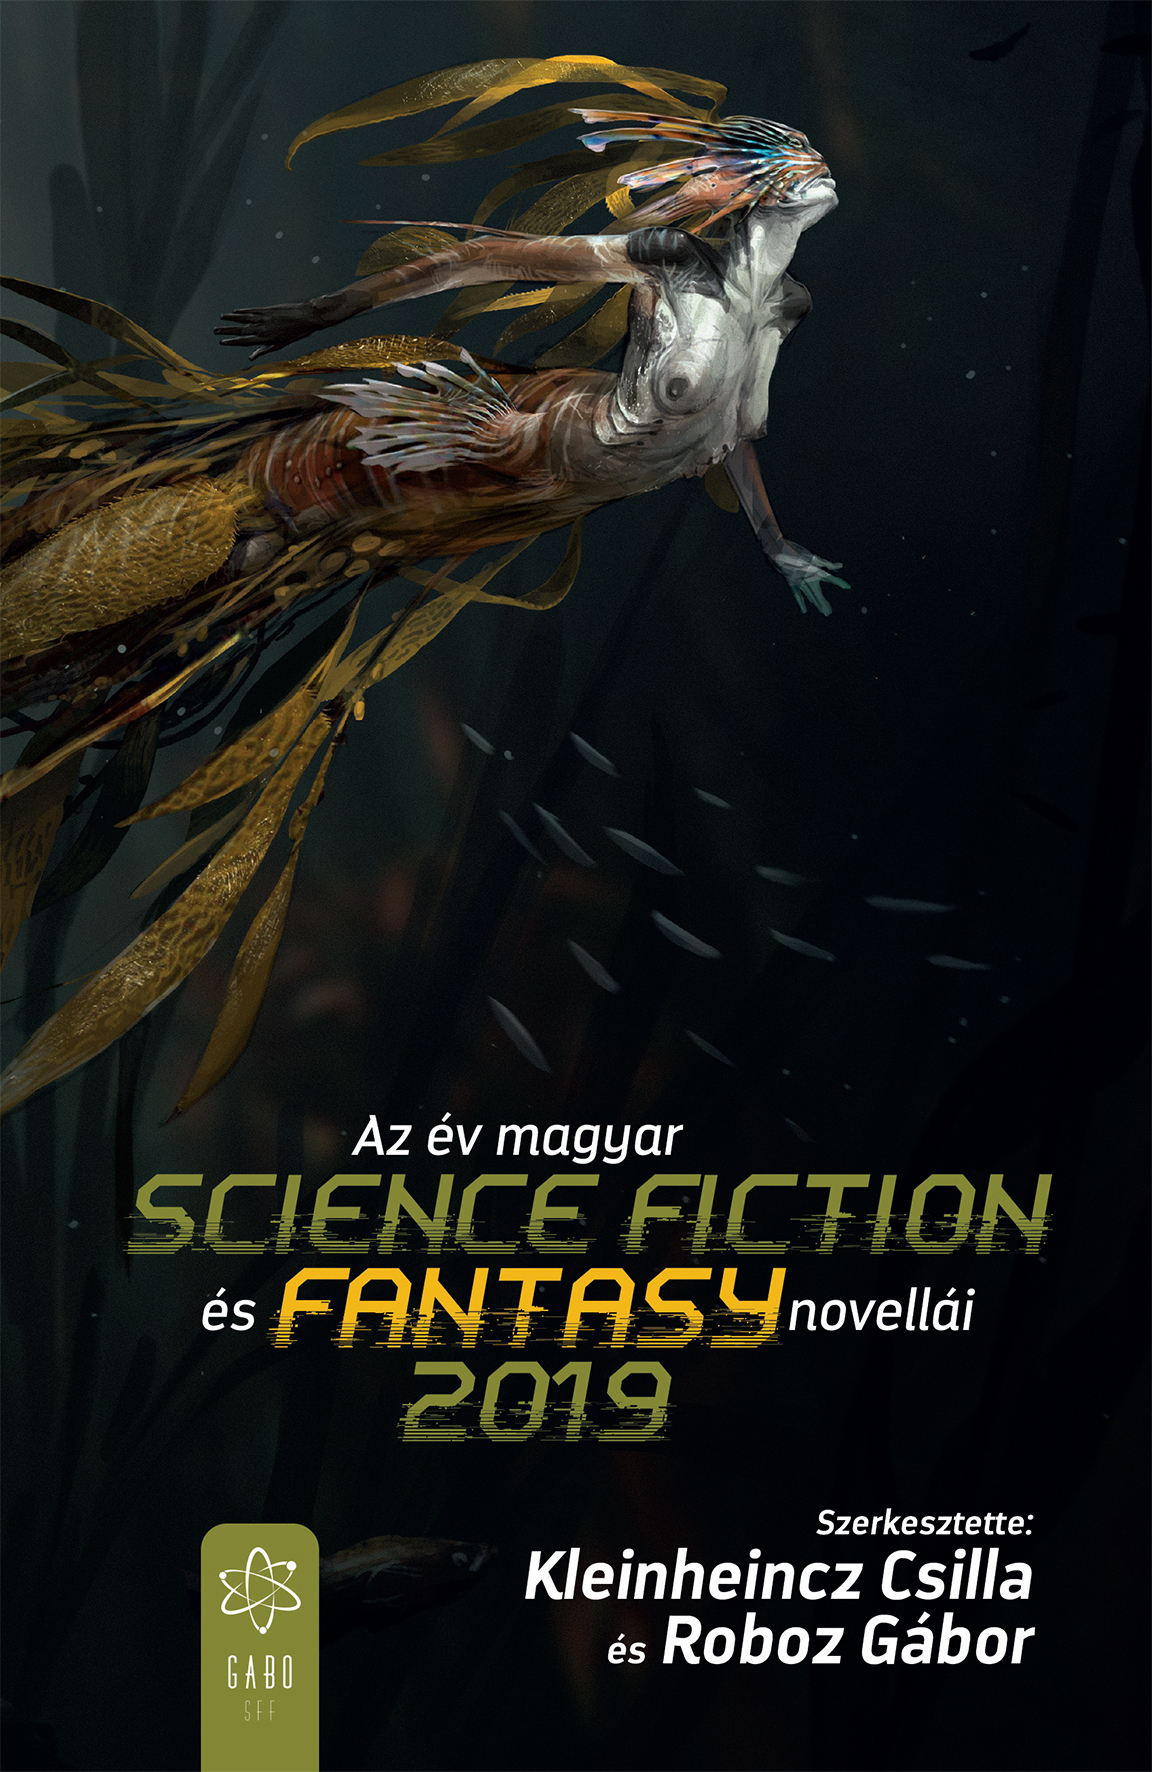 az_ev_magyar_sci-fi_es_fantasy_novellai2019_media.jpg